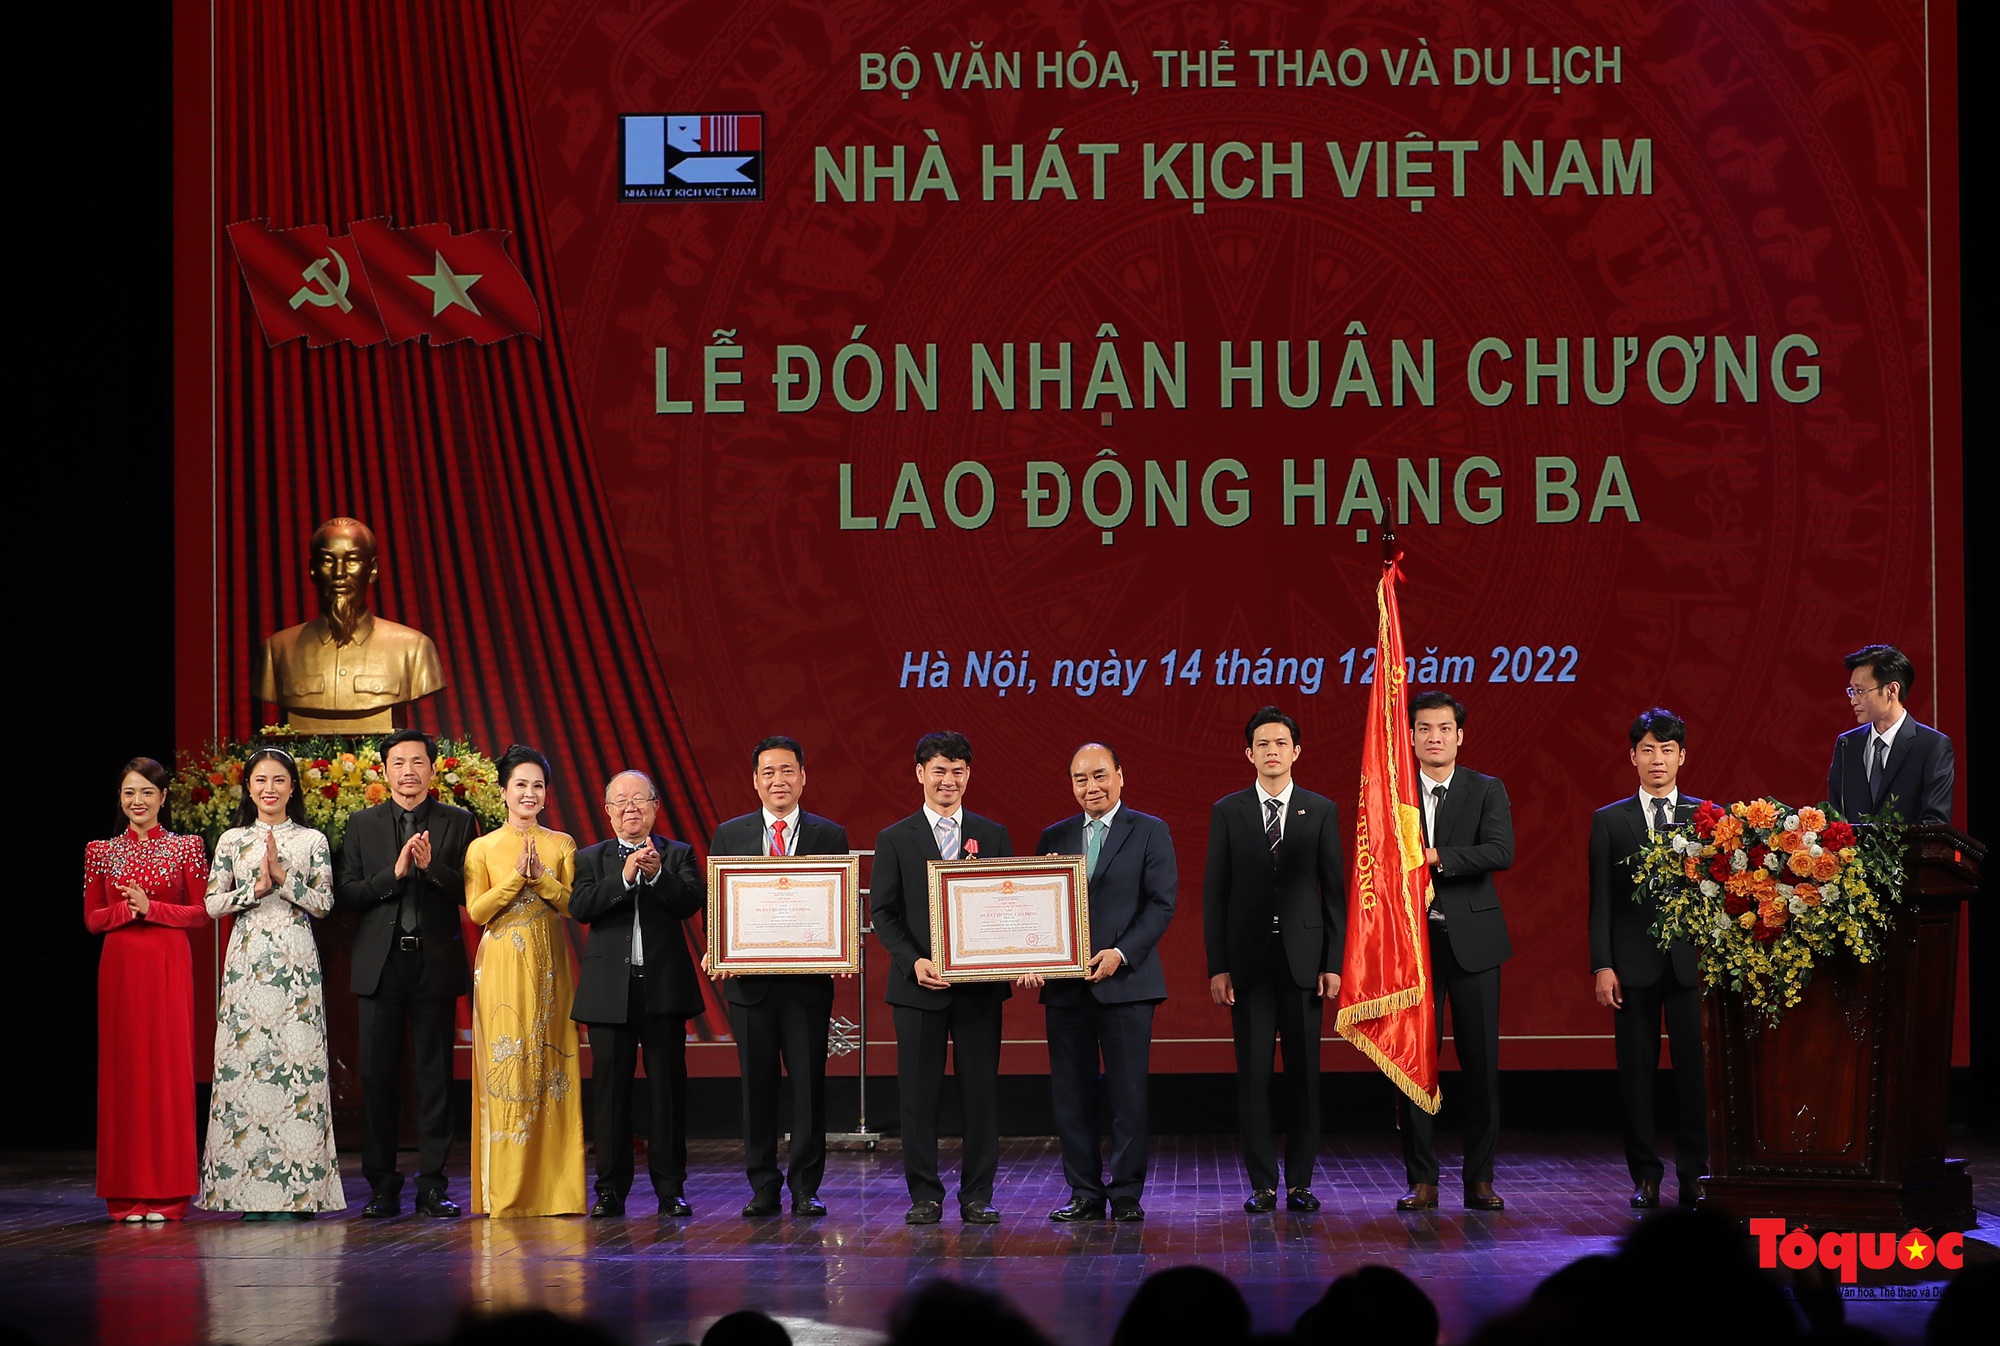 Lễ kỷ niệm 70 năm thành lập Nhà hát Kịch Việt Nam - Ảnh 11.